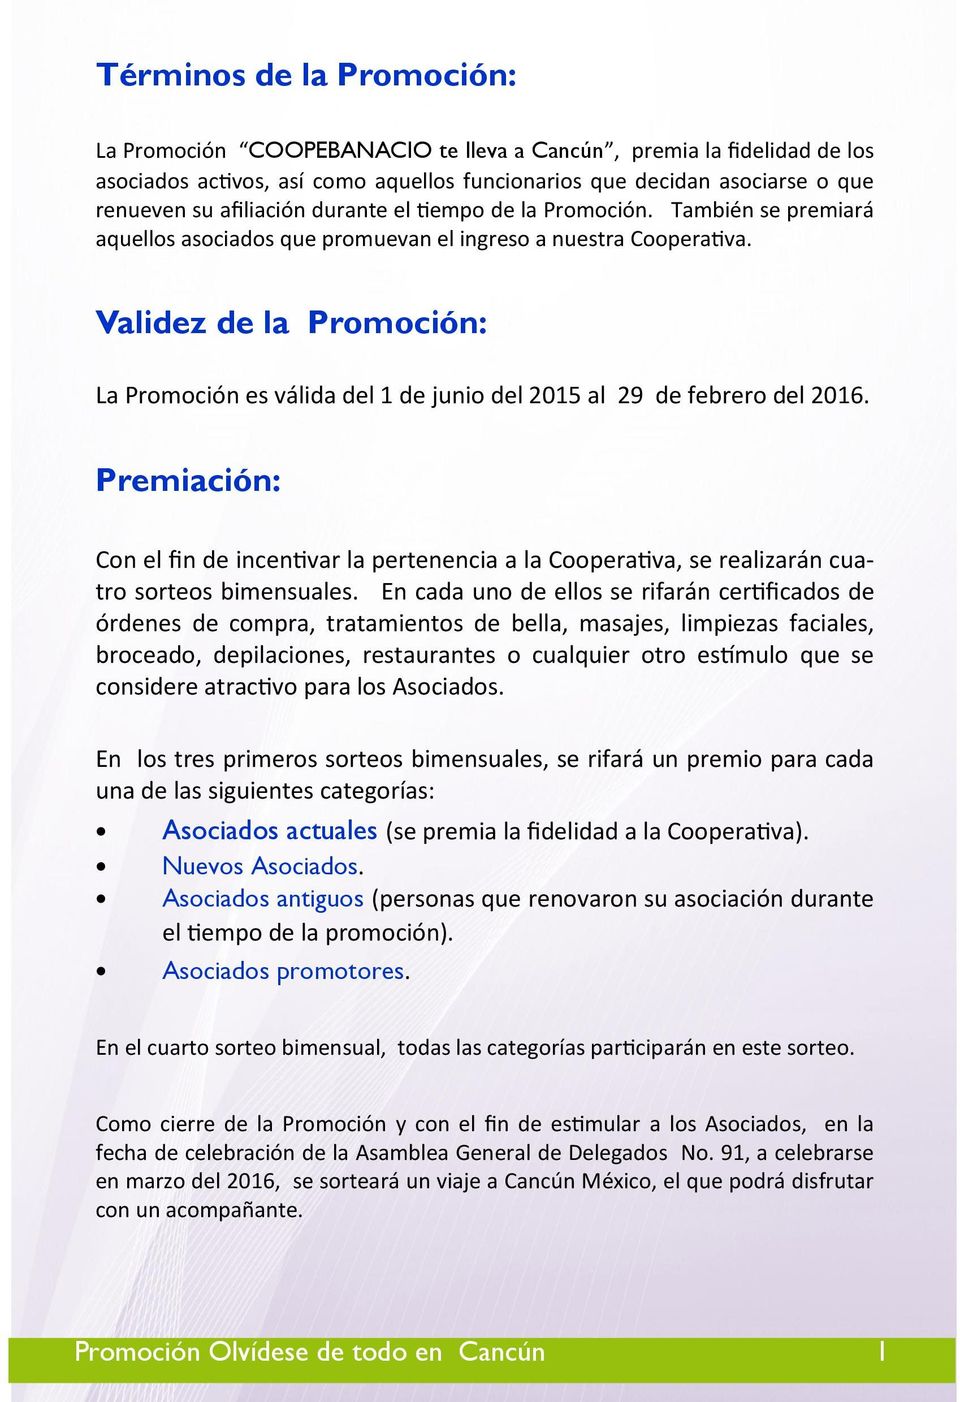 Validez de la Promoción: La Promoción es válida del 1 de junio del 2015 al 29 de febrero del 2016.